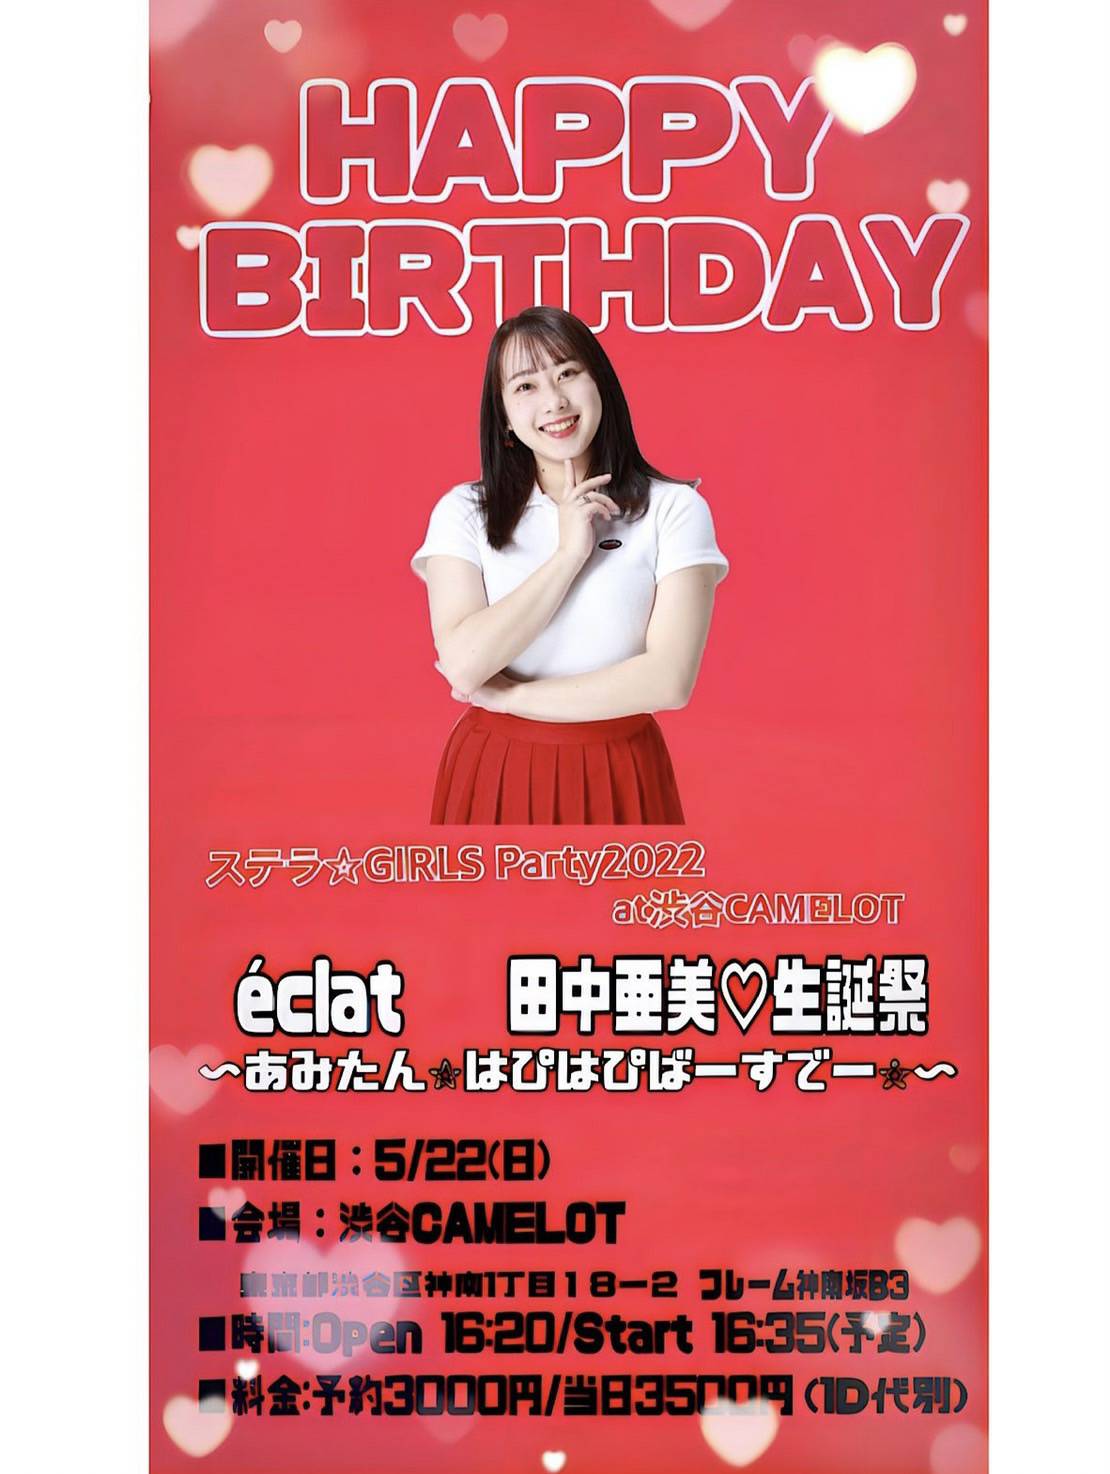 『 ステラ☆GIRLS Party2022at渋谷CAMELOT éclat    田中亜美♡生誕祭 あみたん⭐️はぴはぴばーすでー⭐️』supported by VISION RIGHTS Inc.